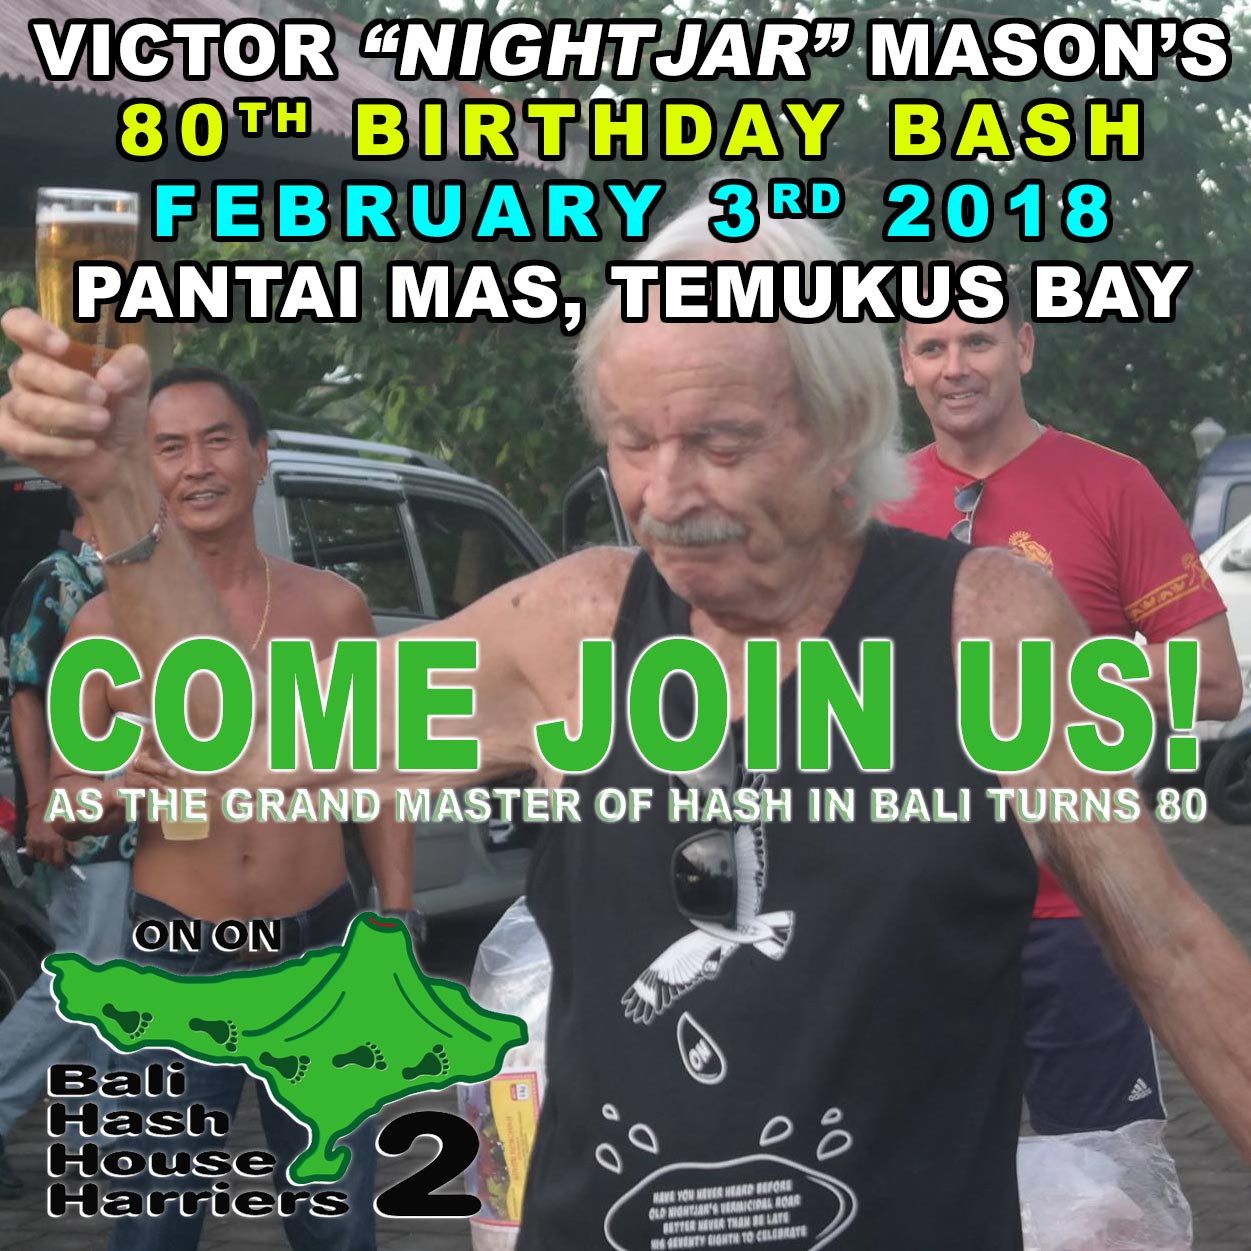 Victor “NightJar” Masons 80th Birthday Bash